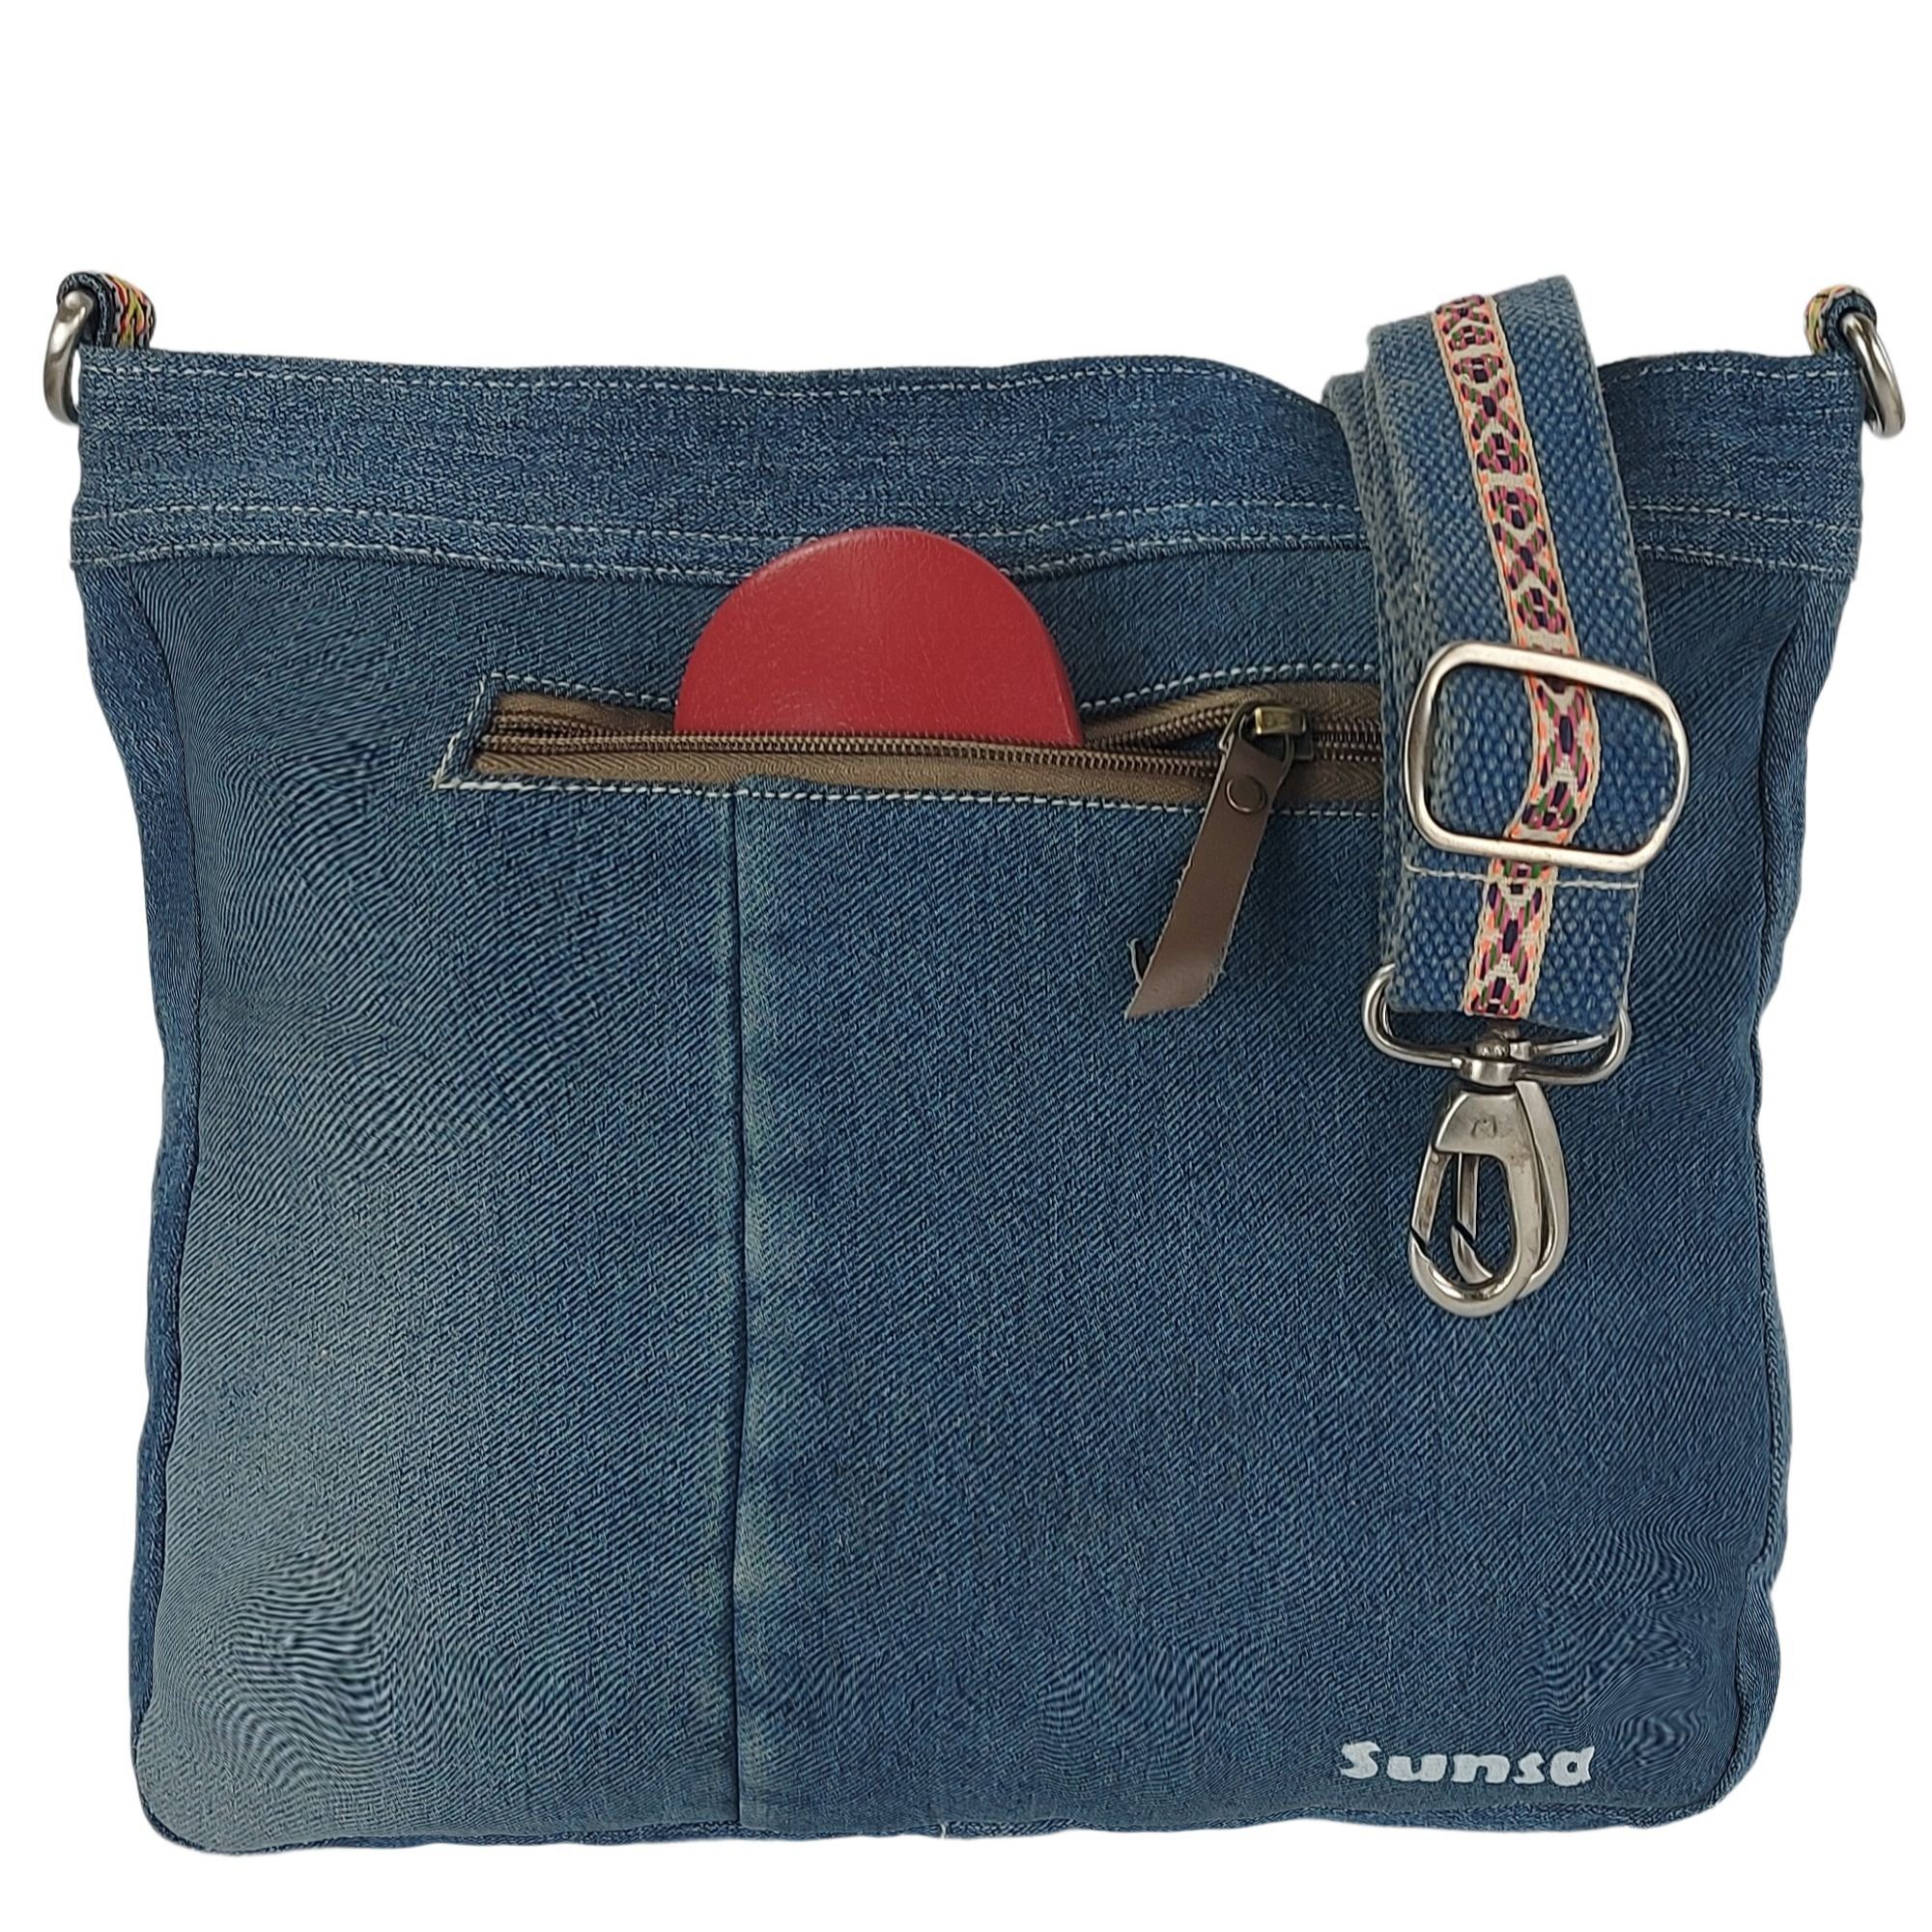 Schultertasche, Nachhaltige mit Sunsa Jeans, abnehmbaren rot/blau Material recyceltes Umhängetasche streifen Schulterriemen, enthält aus Damen recycelte Umhängetasche